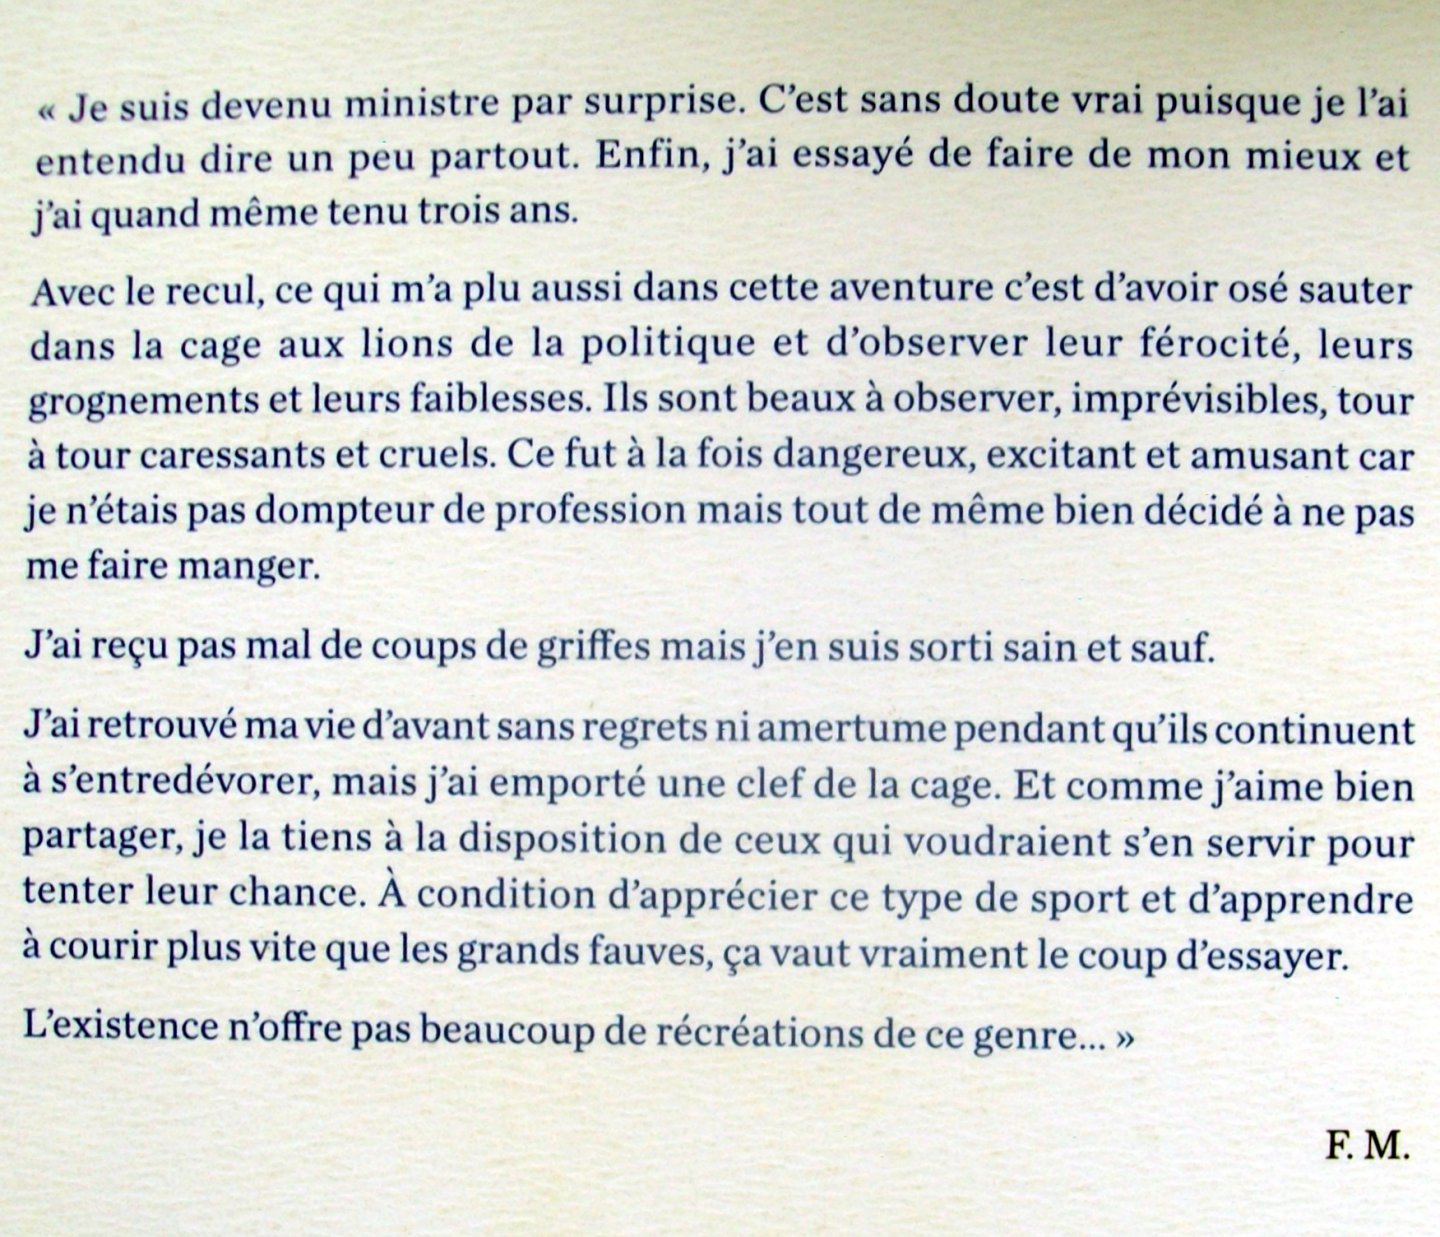 Mitterrand, Frédérique - La récréation (FRANSTALIG)